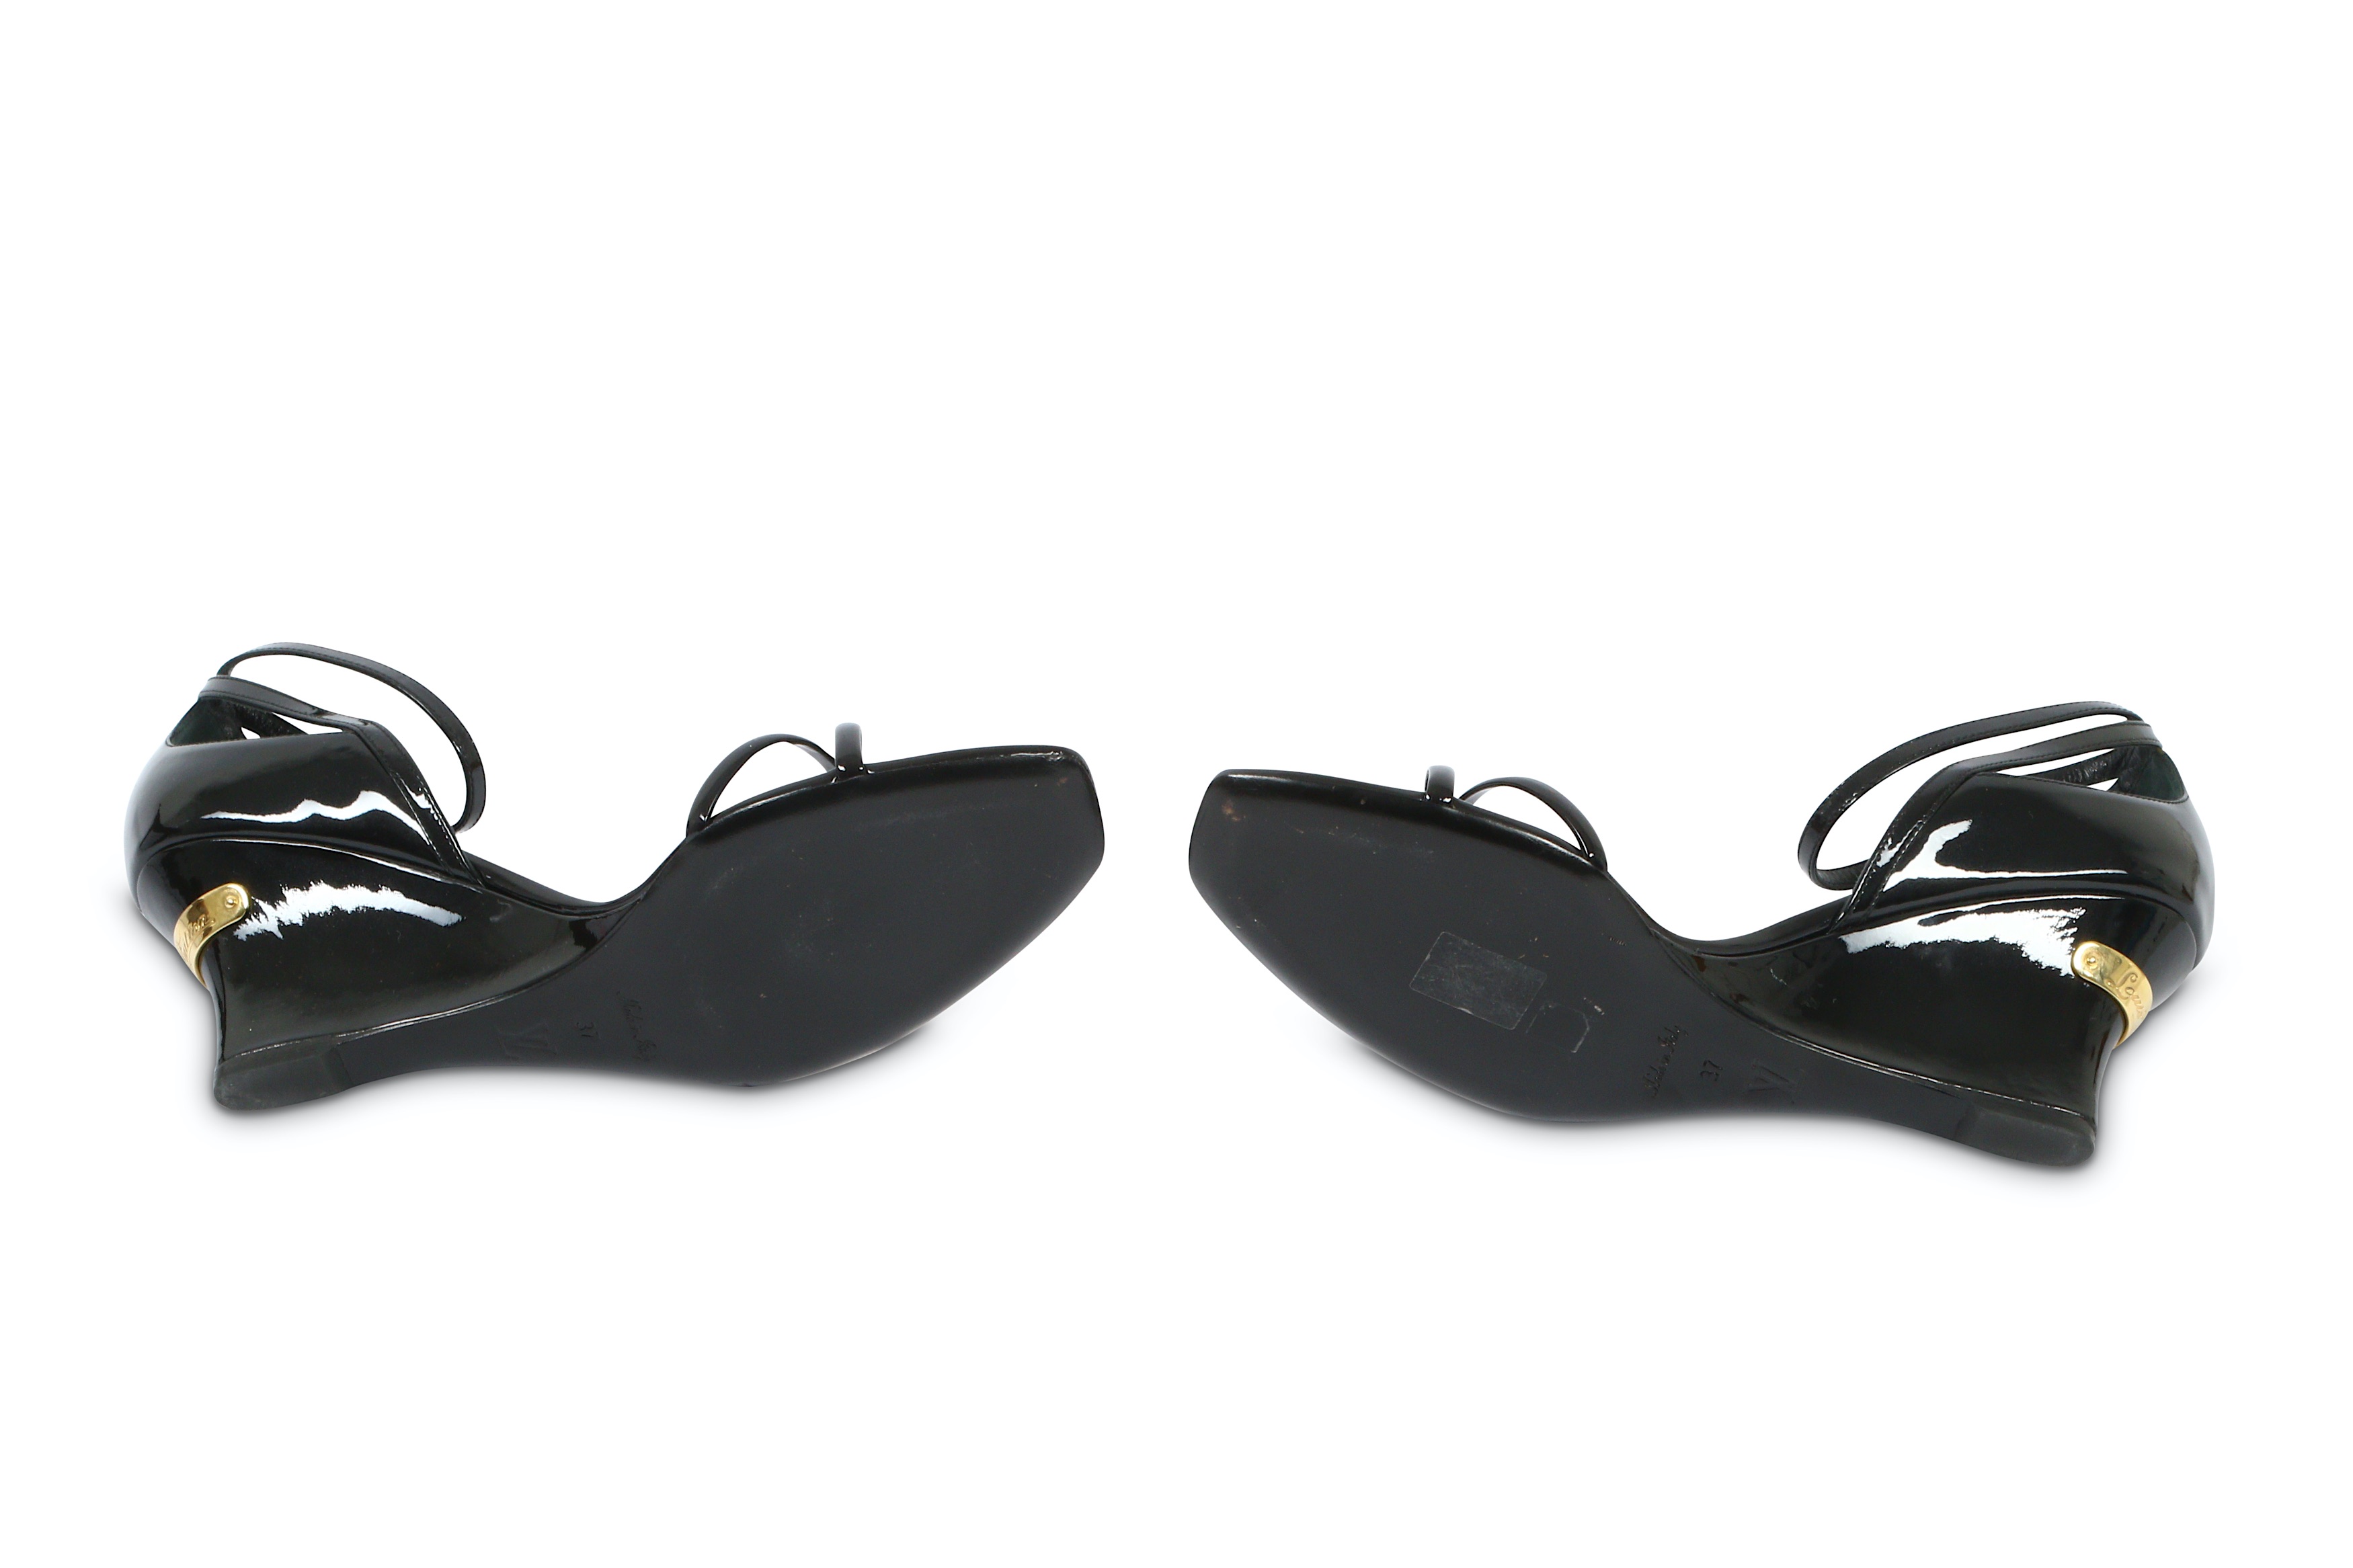 Lot 150 - Louis Vuitton Black Patent Wedge Sandals 